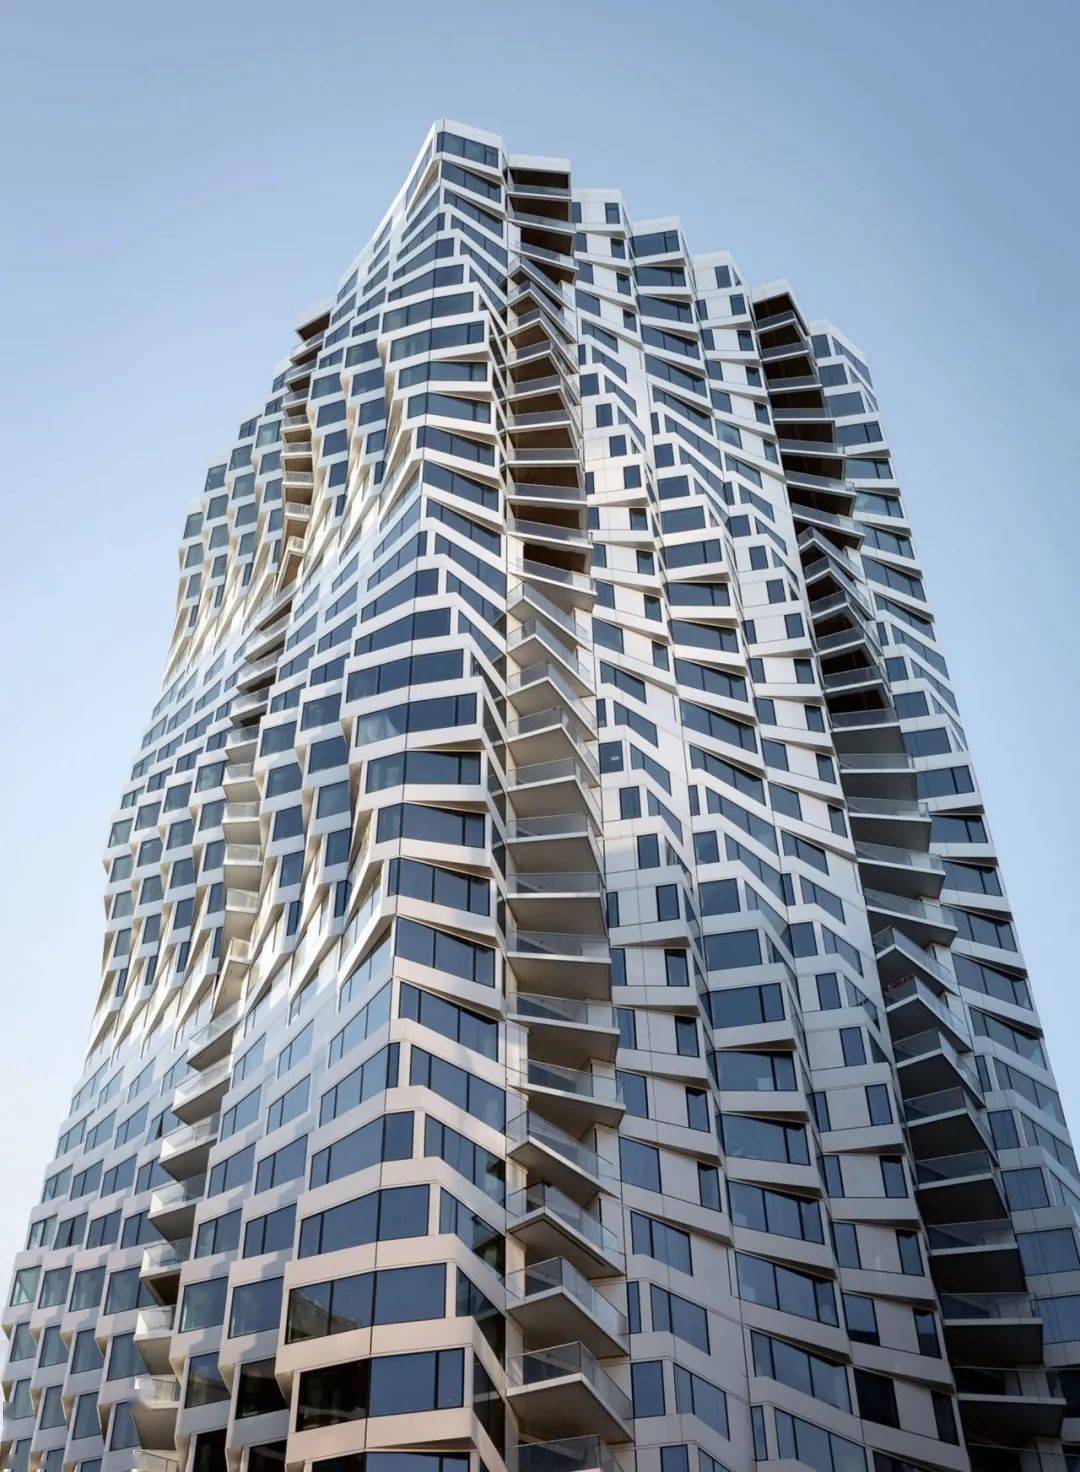 40 层高的公寓大楼,外立面由扭曲的矩形柱组成.